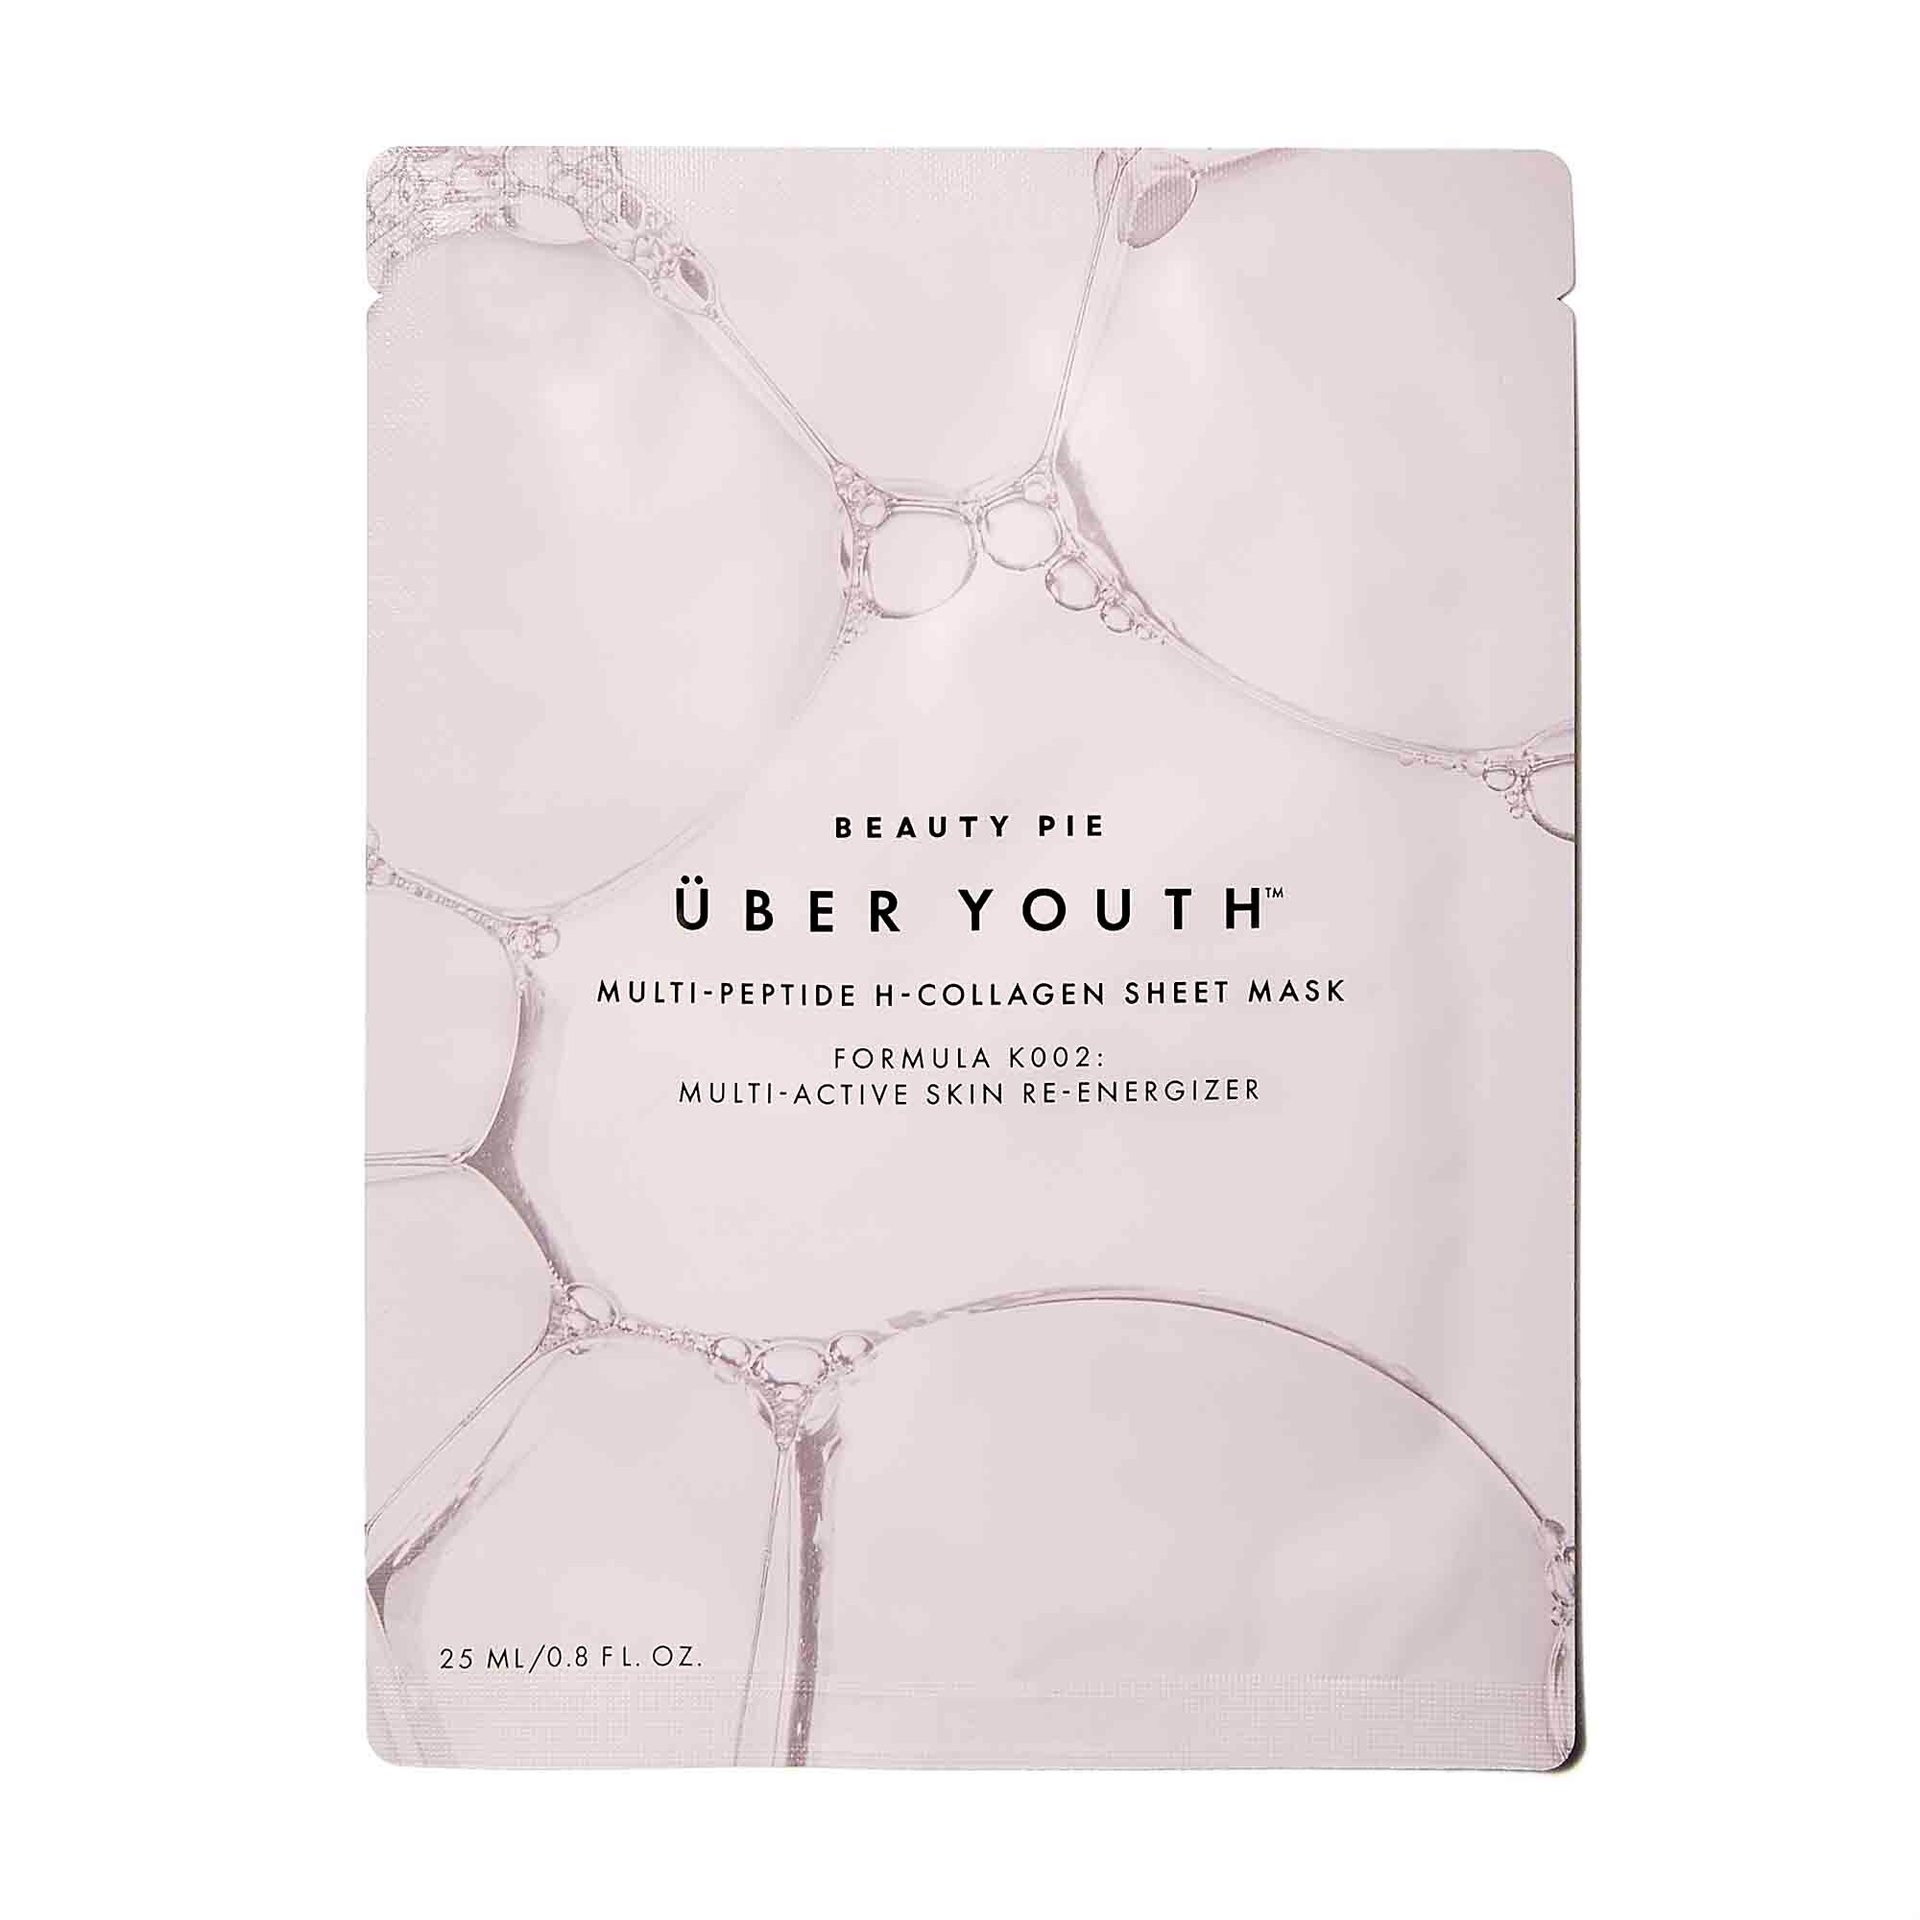 Über Youth™ Multi-Peptide H-Collagen Sheet Mask